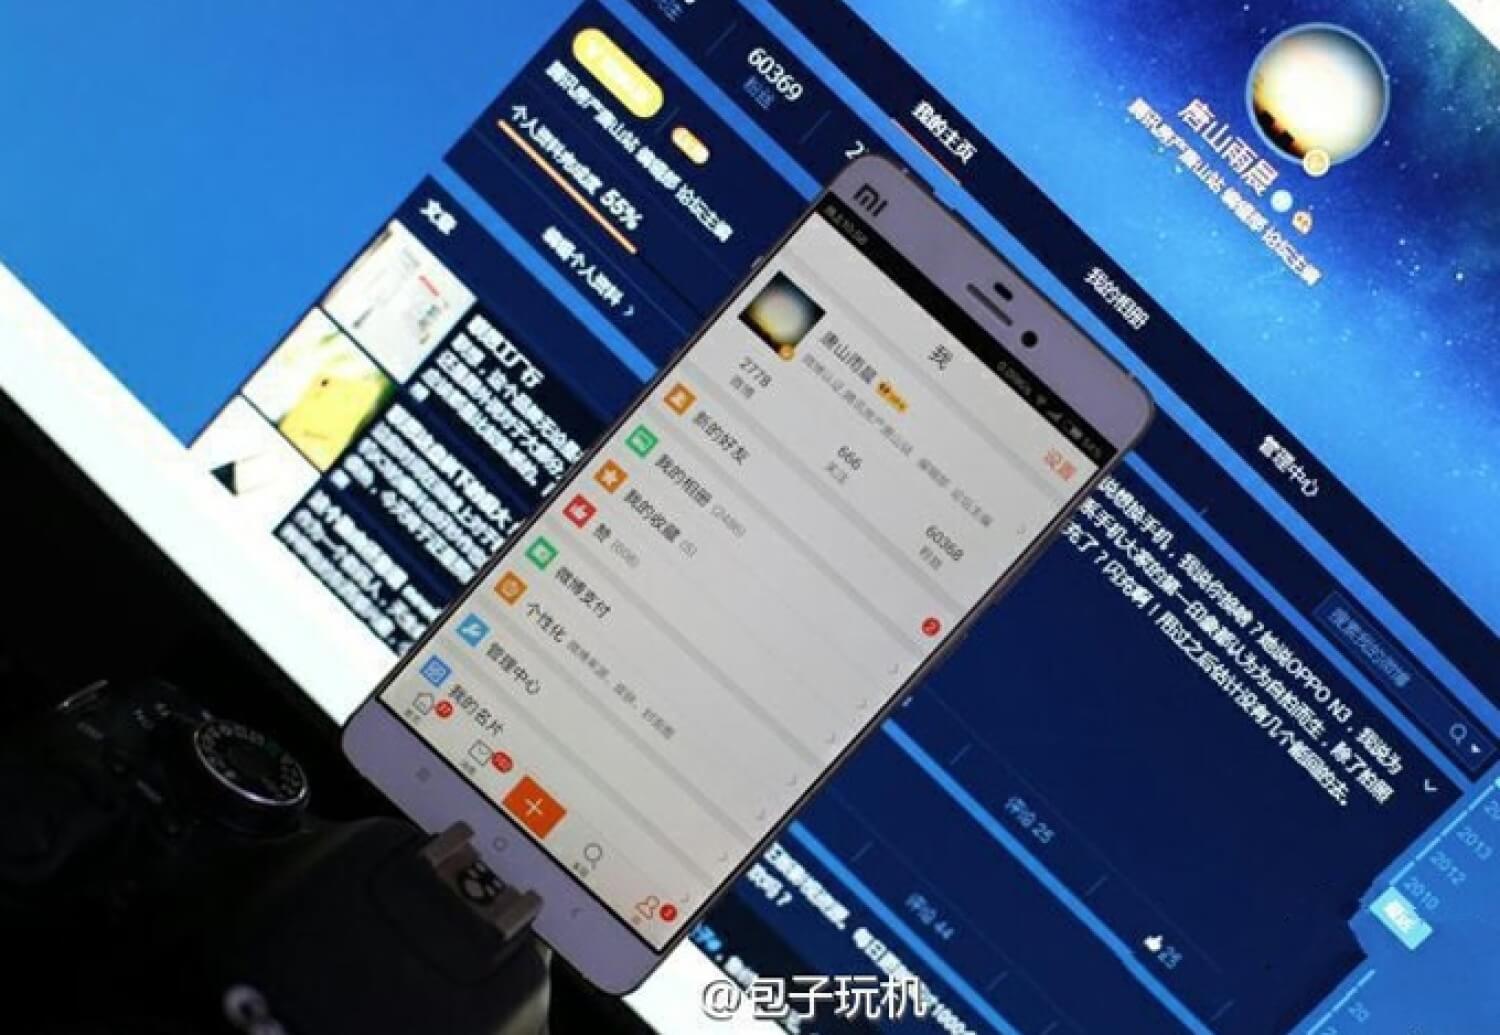 Следующий удар Xiaomi нанесет по Apple: Mi5 может получить сапфировый экран. Фото.